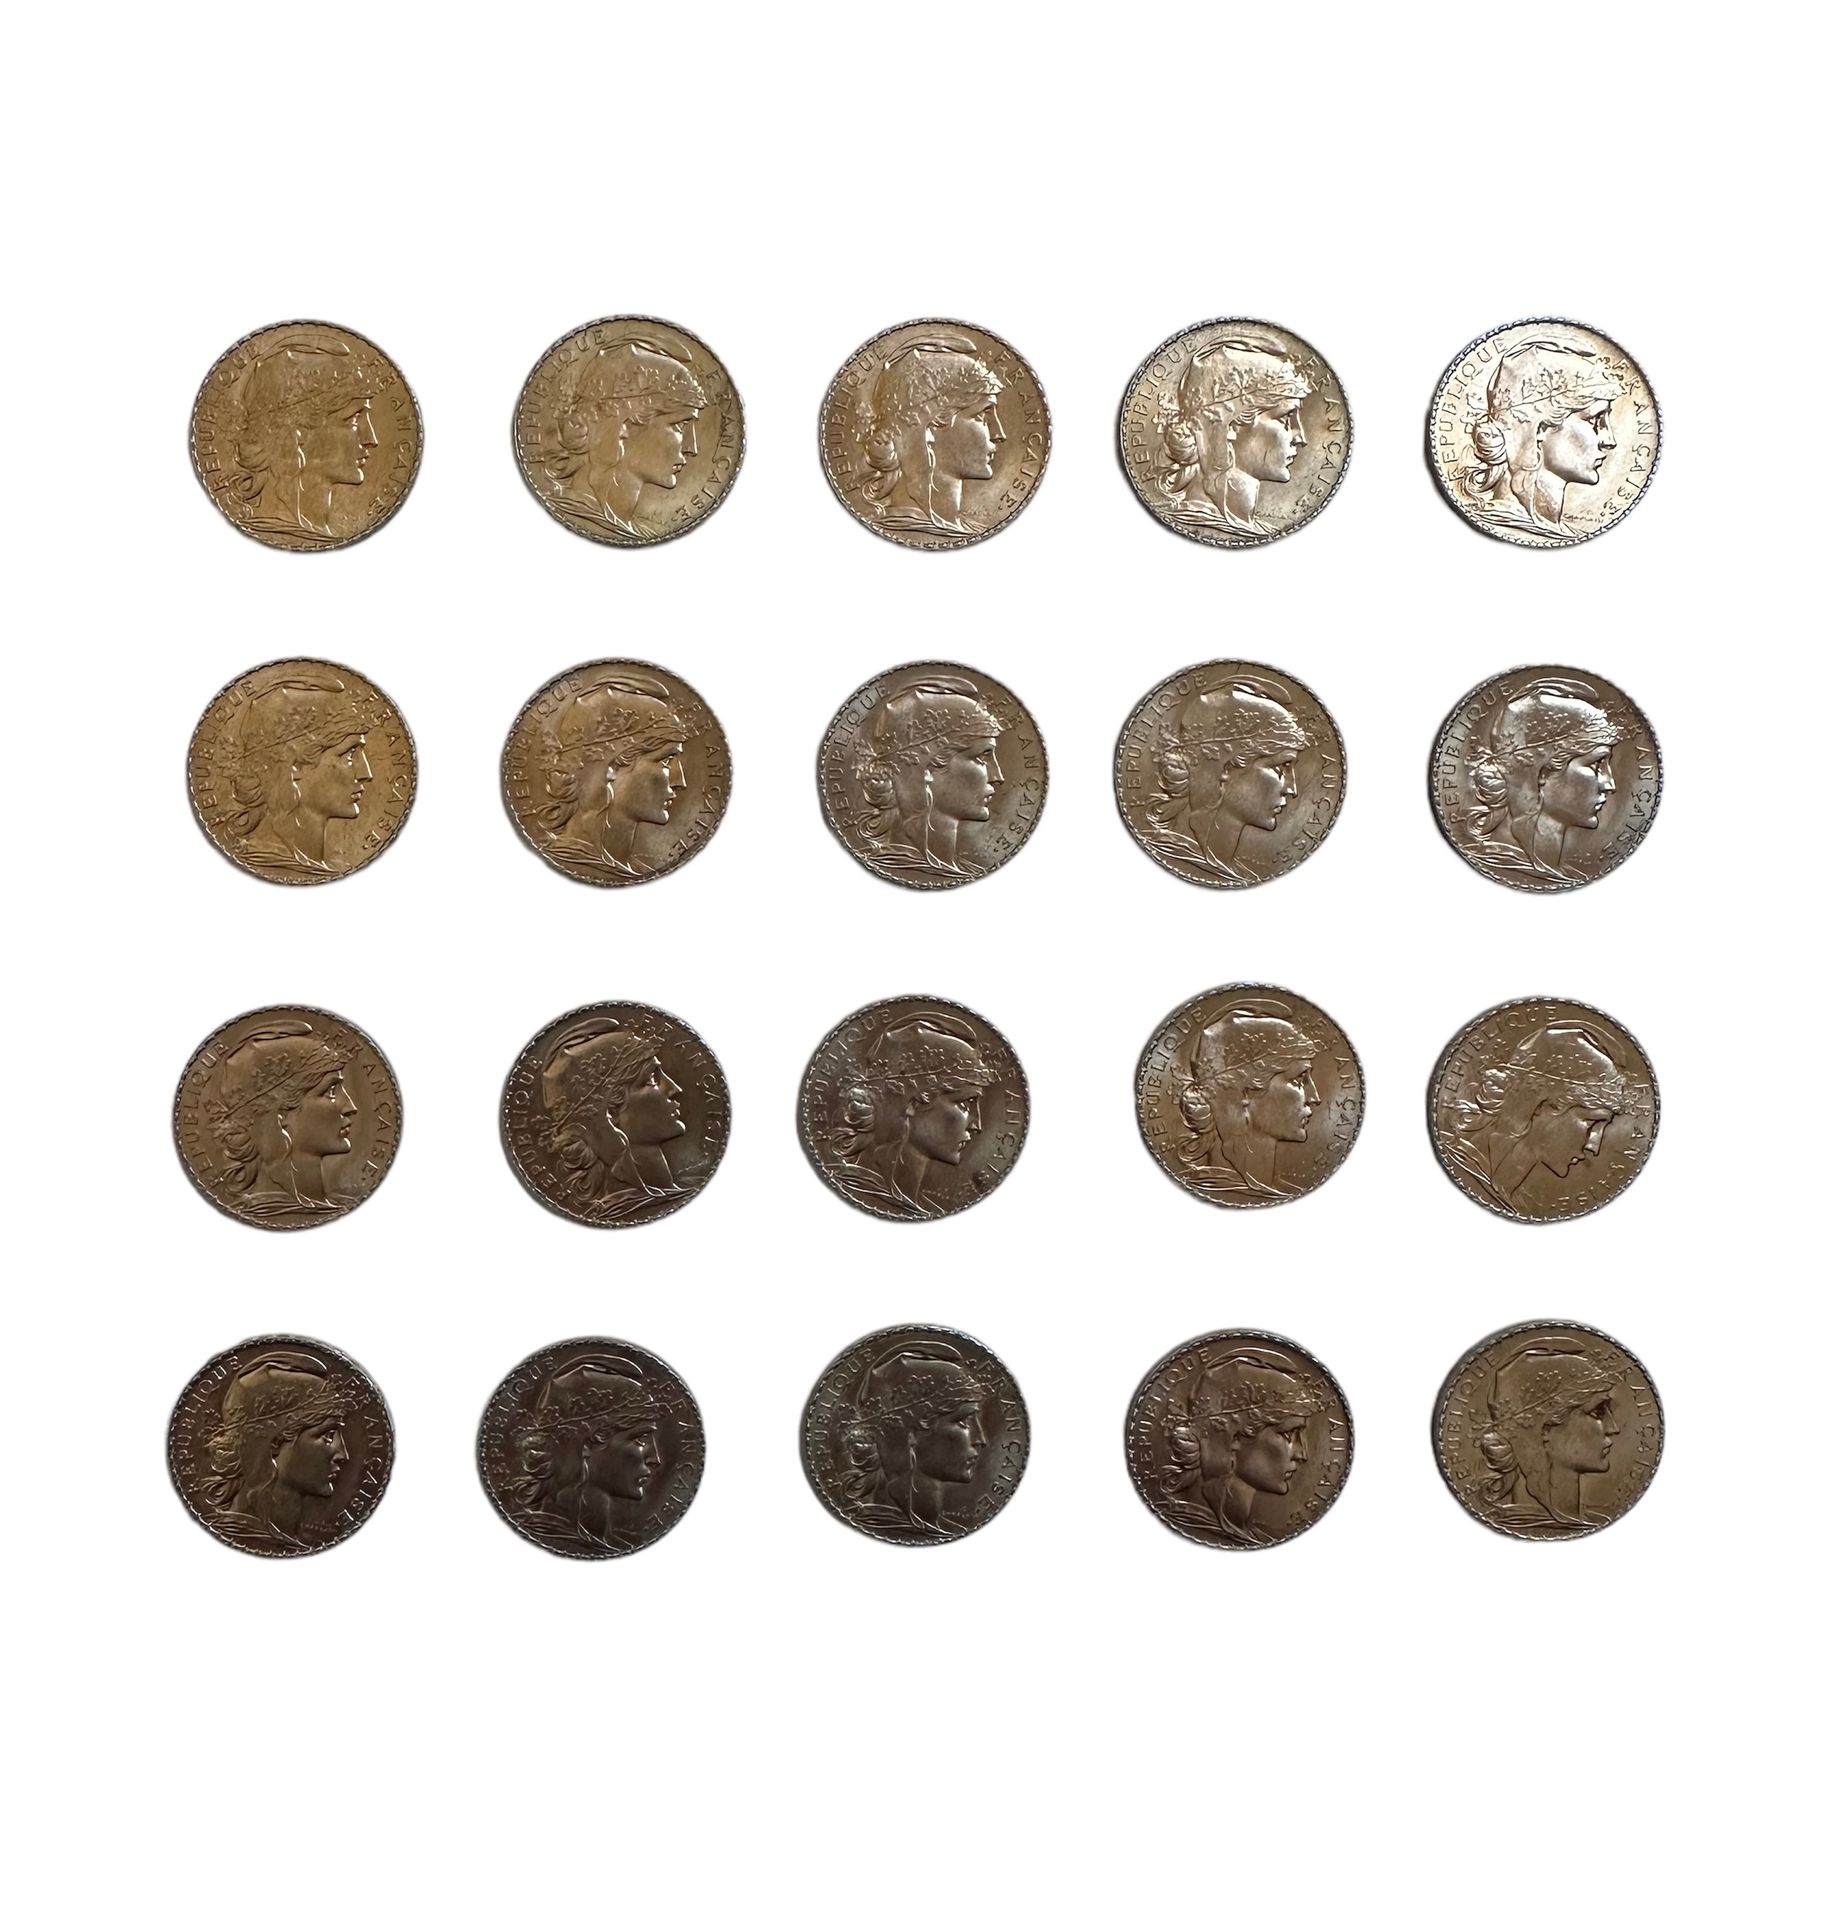 Null FRANCIA
20 monete d'oro da 20 franchi con gallo
Peso: 129 g